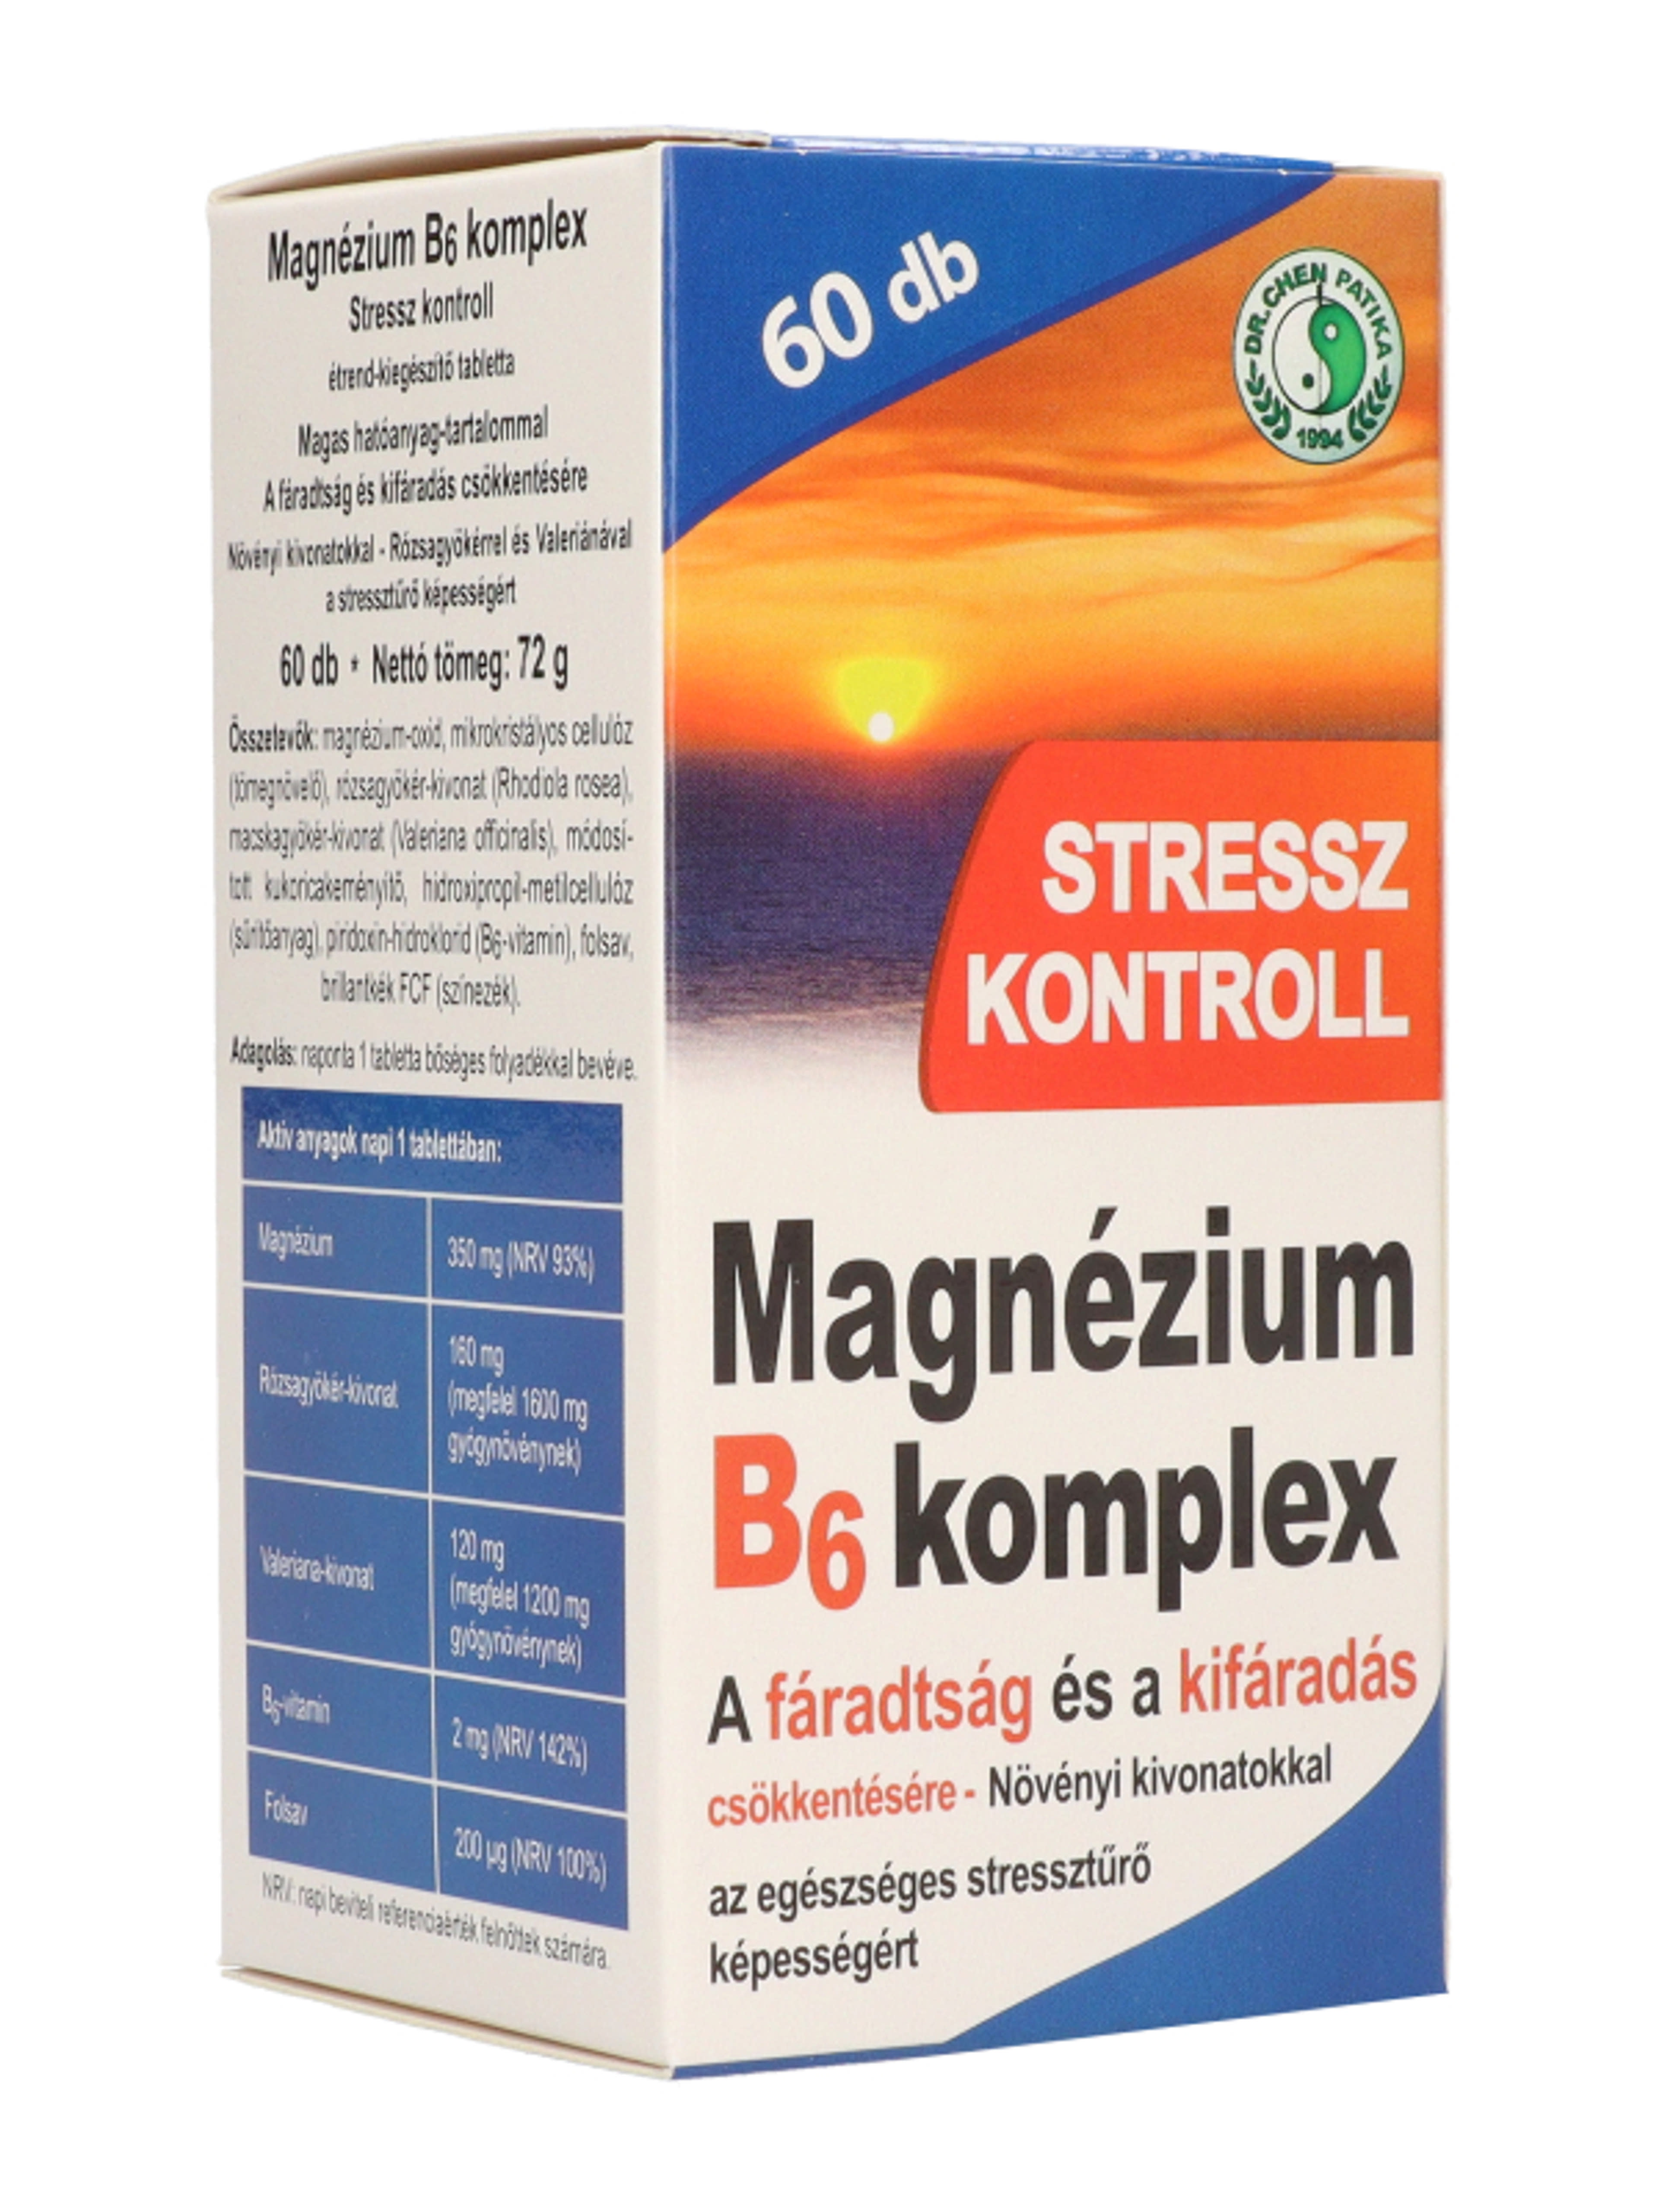 Dr.Chen Patika magnesium B6 komplex stressz tabletta - 60 db-5